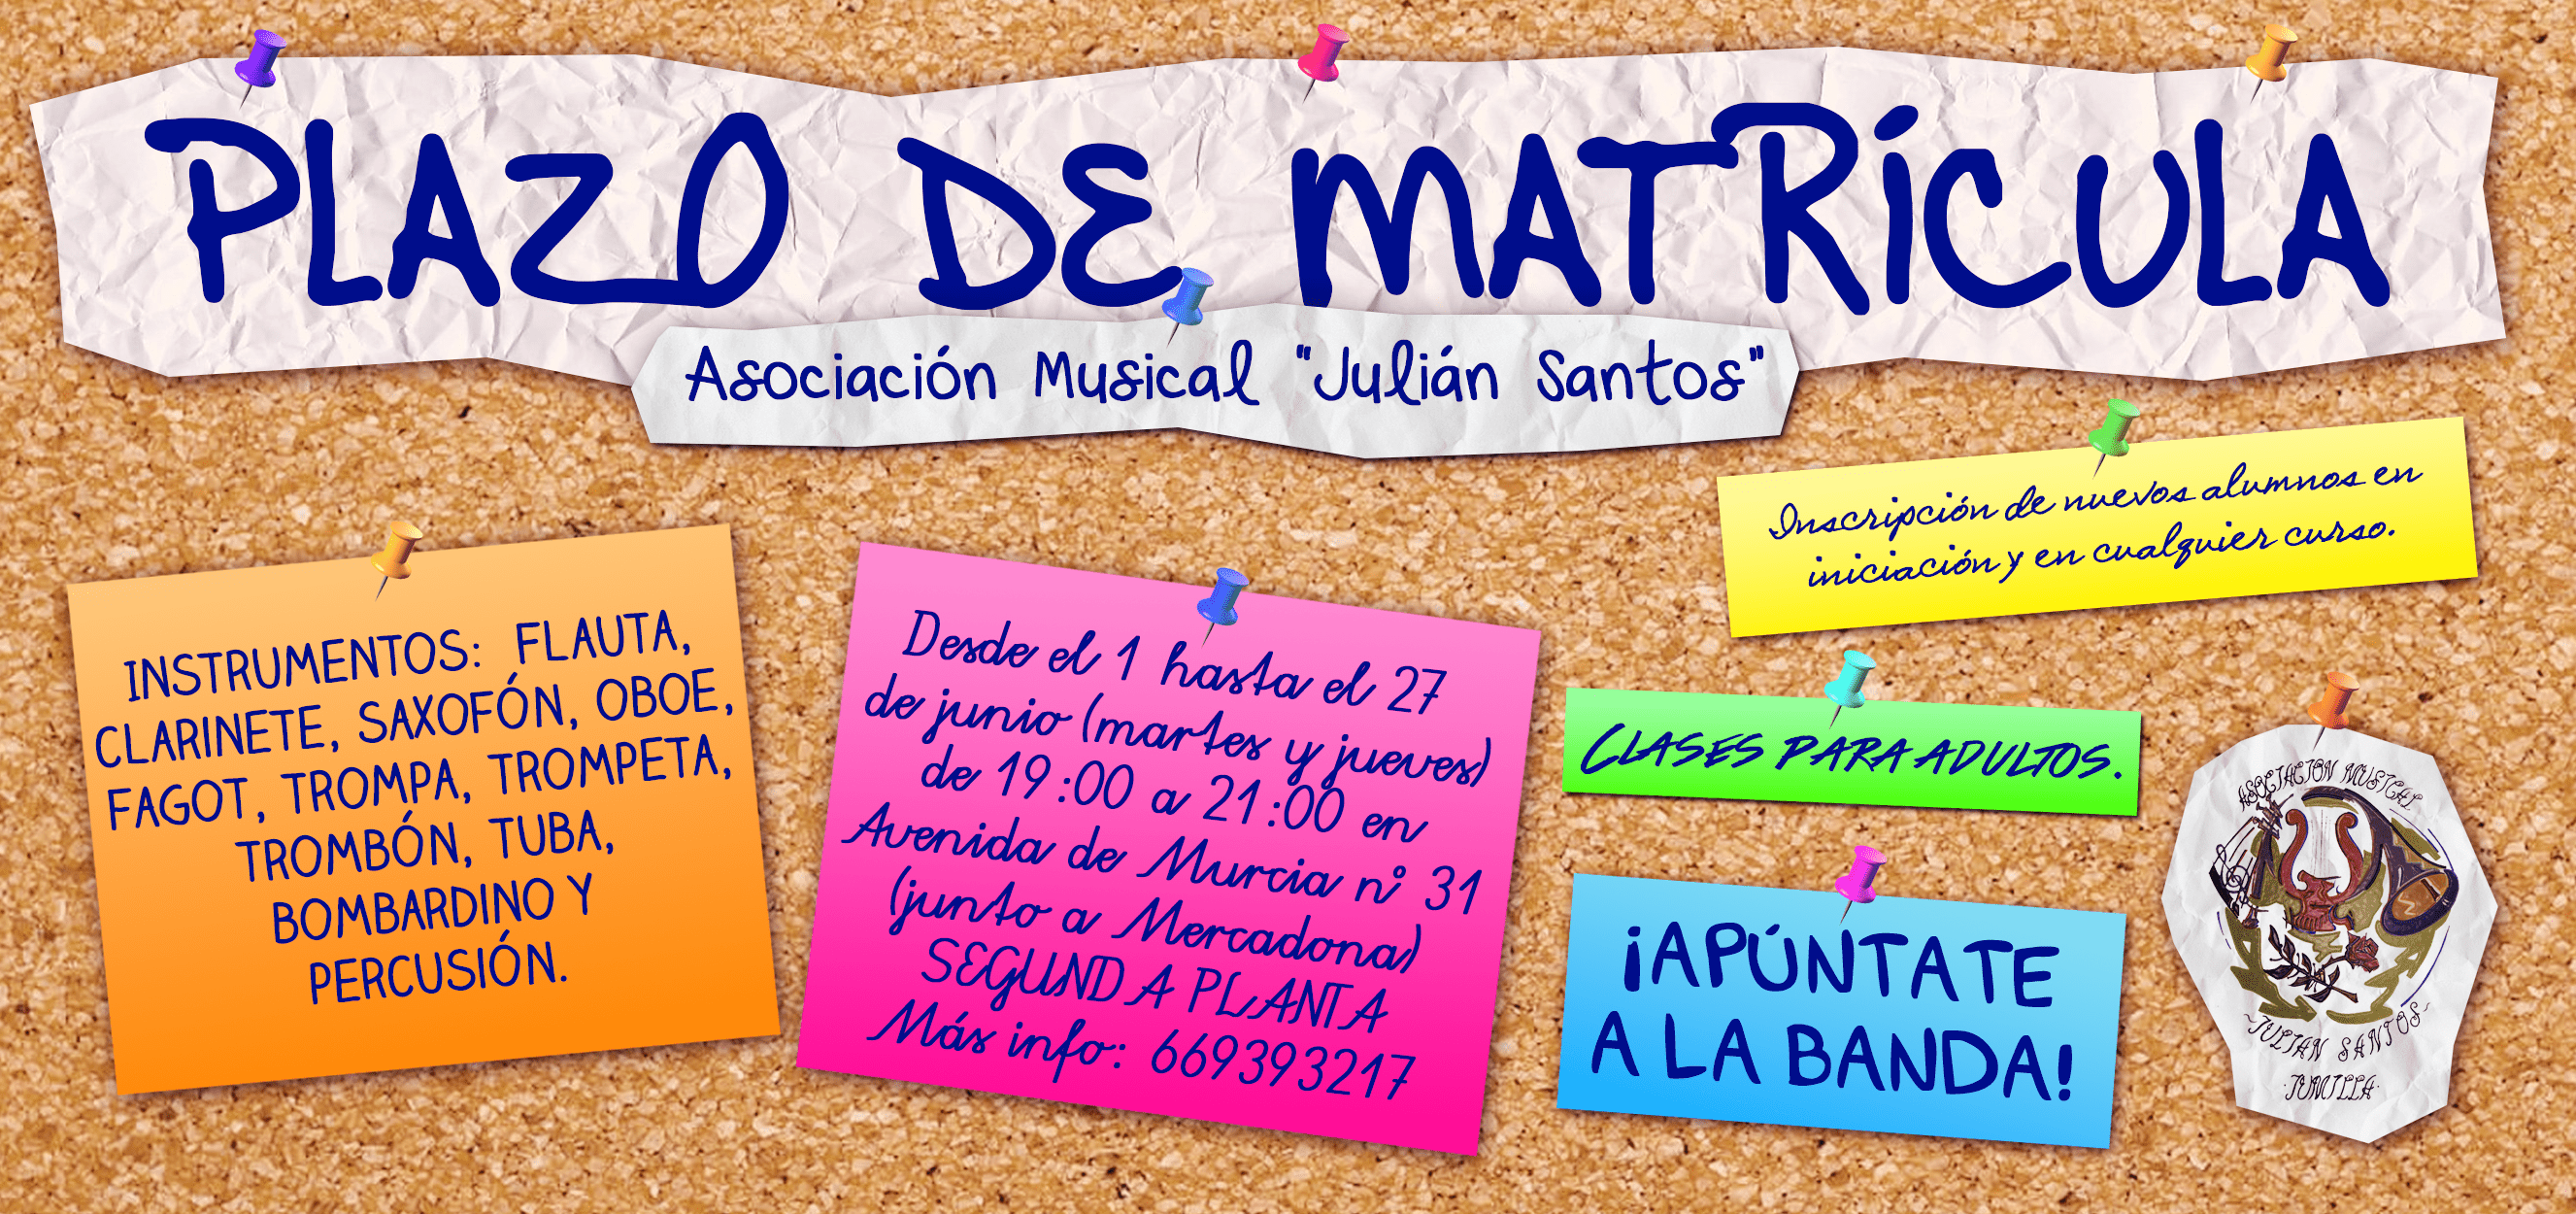 La Asociación Musical Julián Santos abre el plazo de matrículas en su escuela para el próximo curso 2017/2018